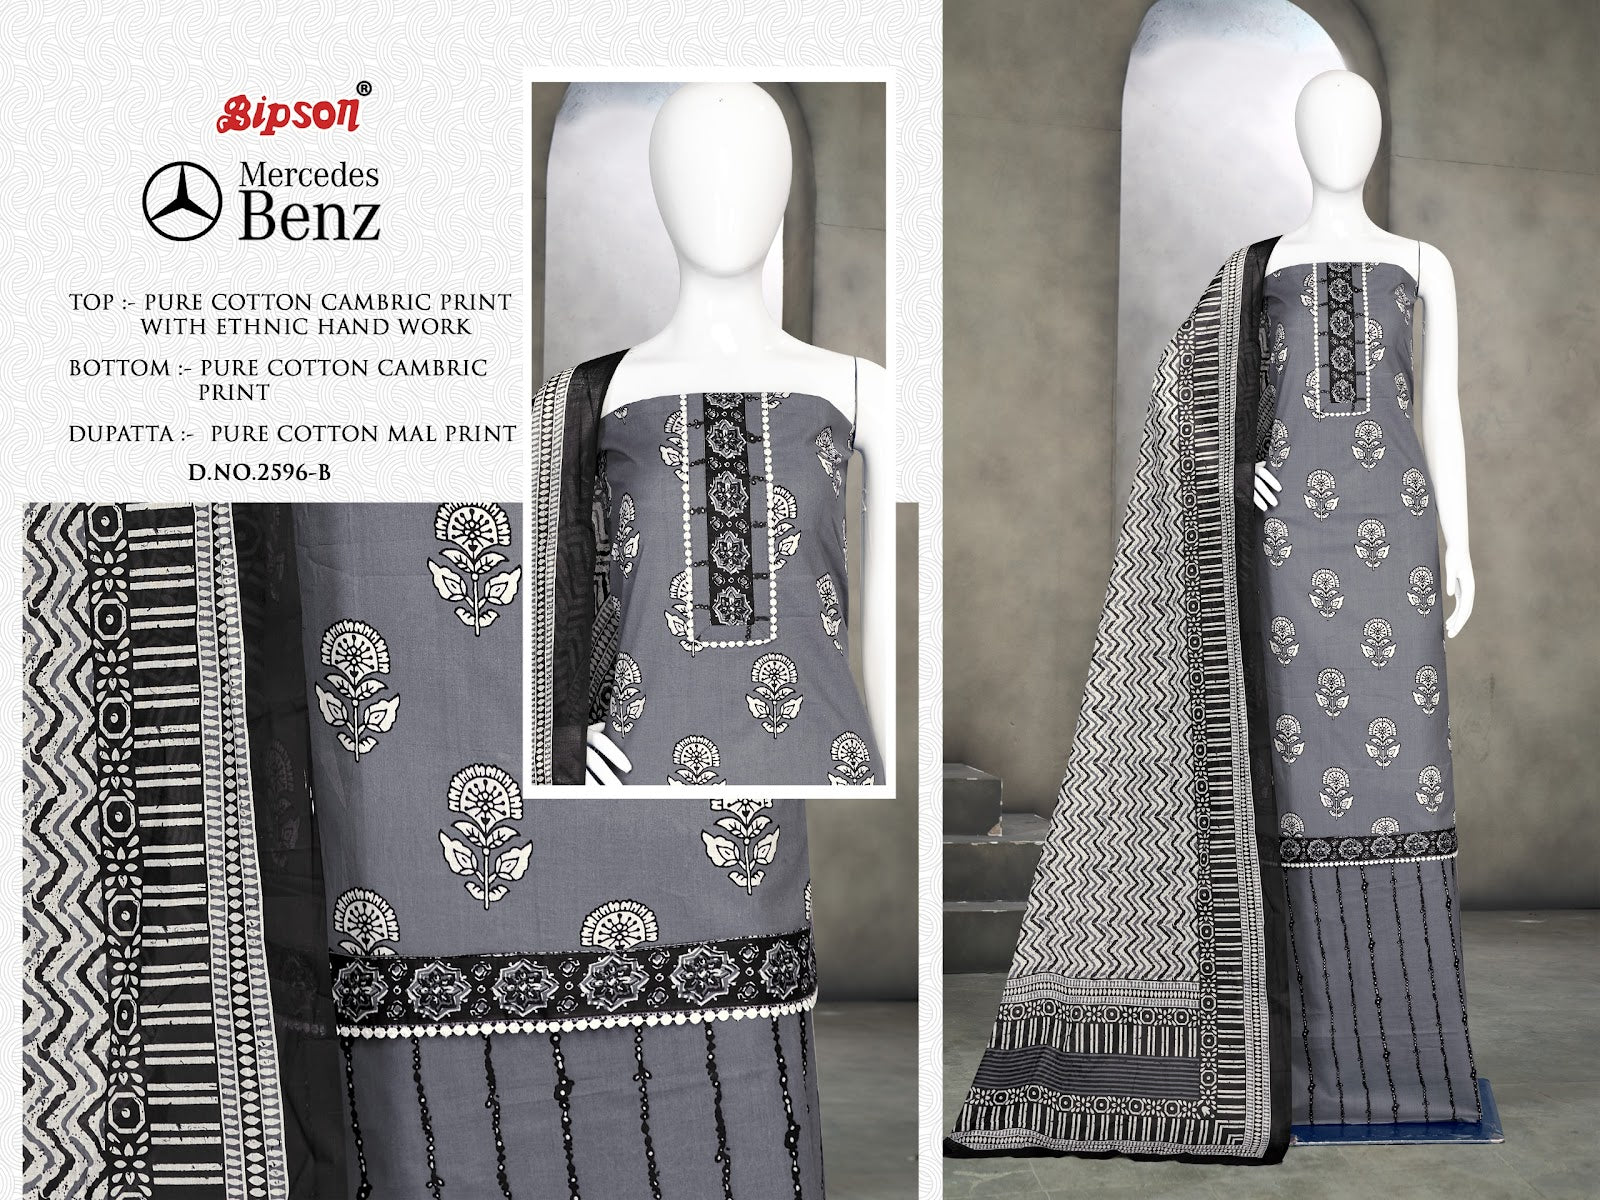 Mercedes Benz 2596 Bipson Prints Cotton Cambric Pant Style Suits